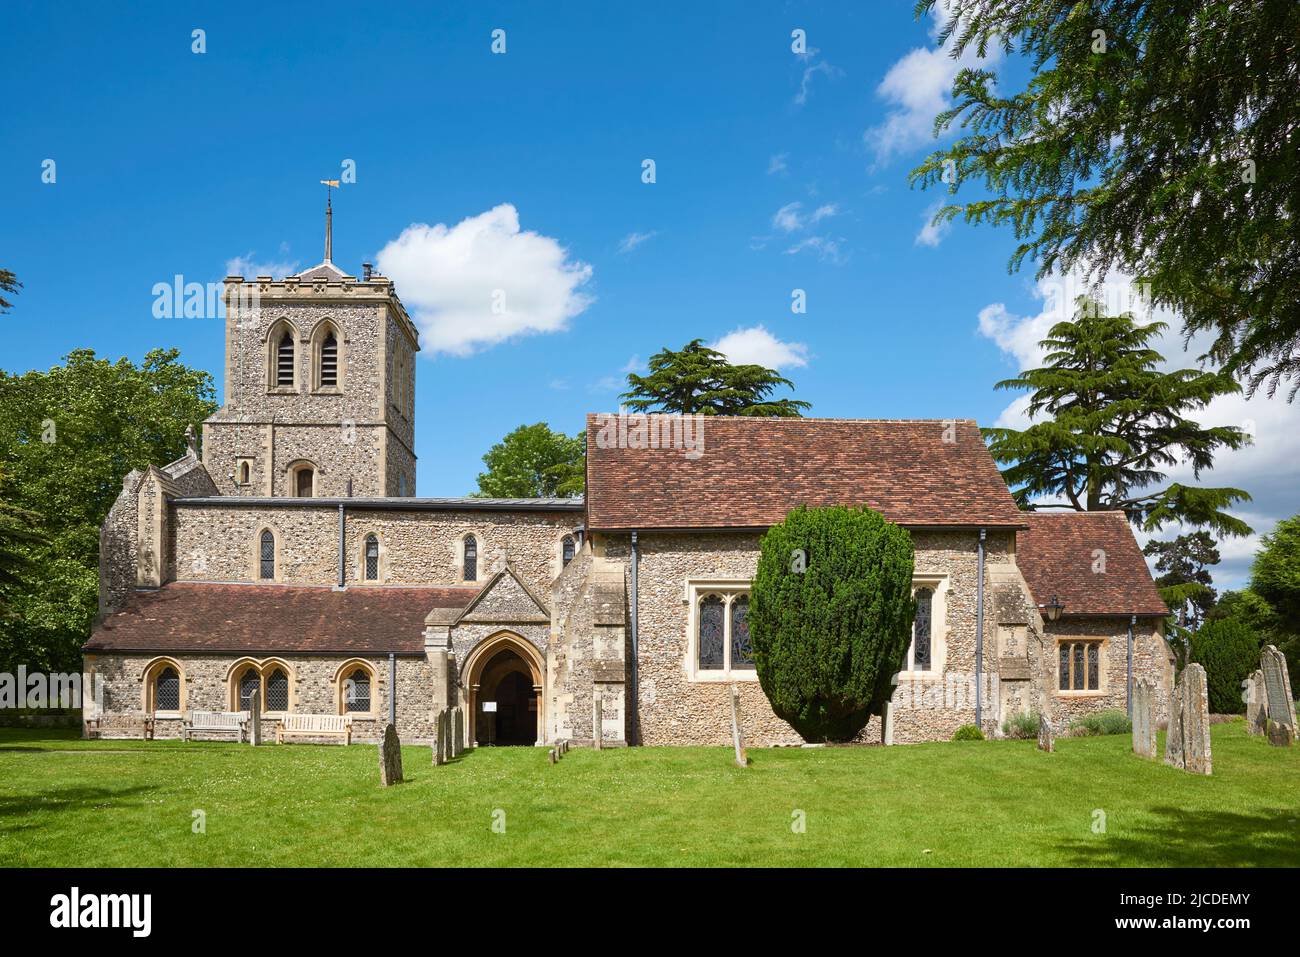 L'église anglo-saxonne historique de St Michael dans la ville de St Albans, Hertfordshire, Royaume-Uni Banque D'Images